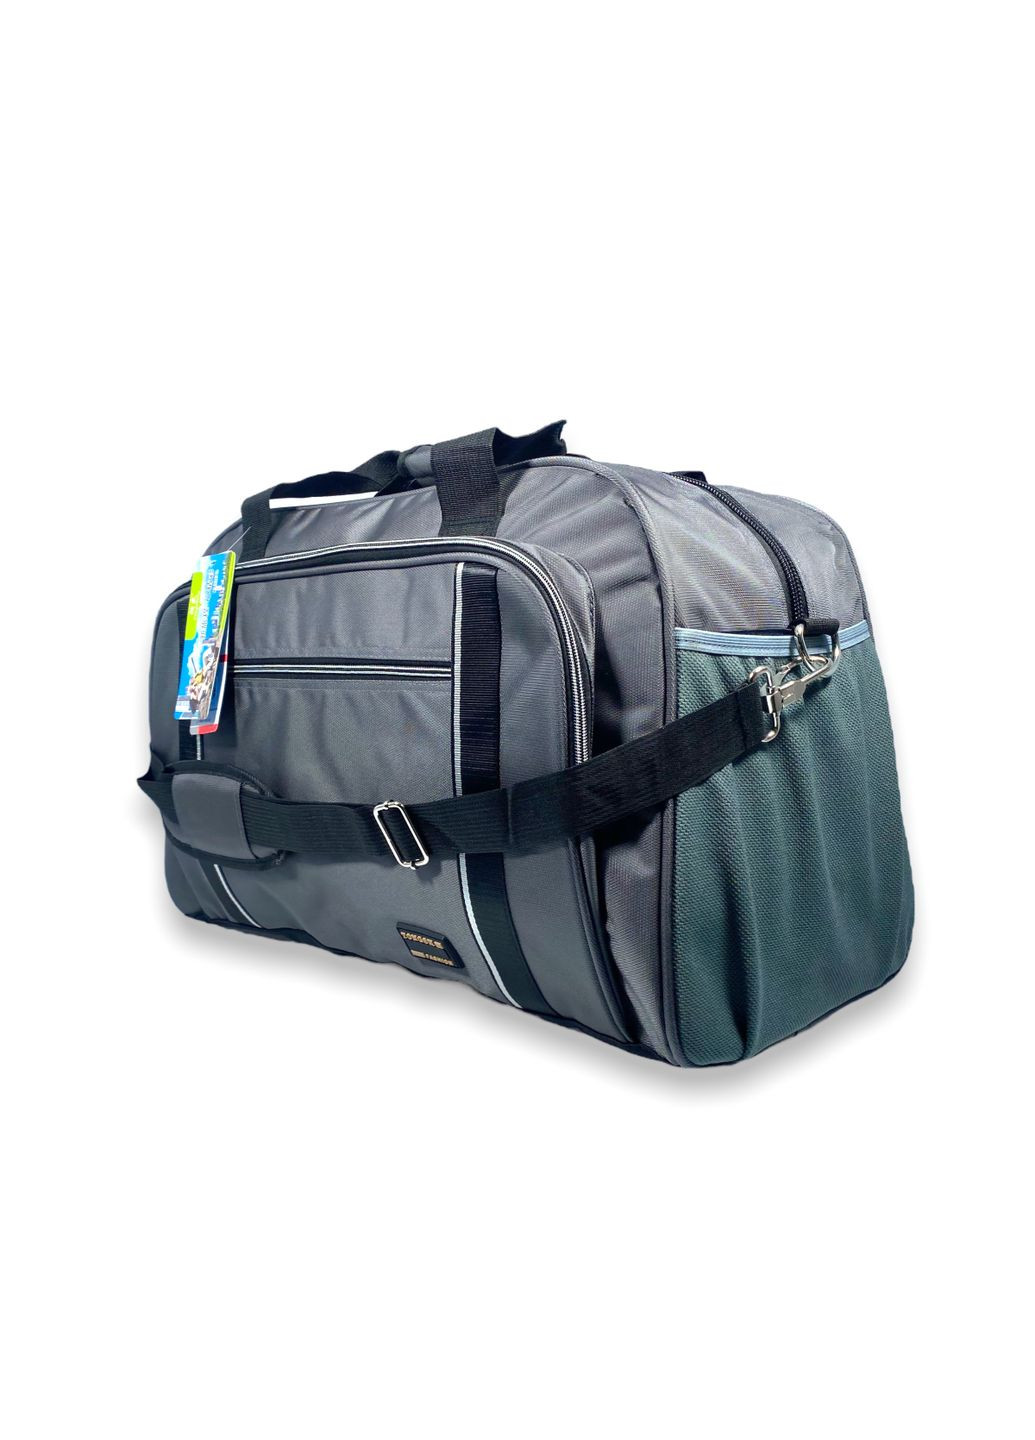 Дорожная сумка 60 л одно отделение внутренний карман два фронтальных кармана размер: 60*40*25 см серый Tongsheng (285814898)